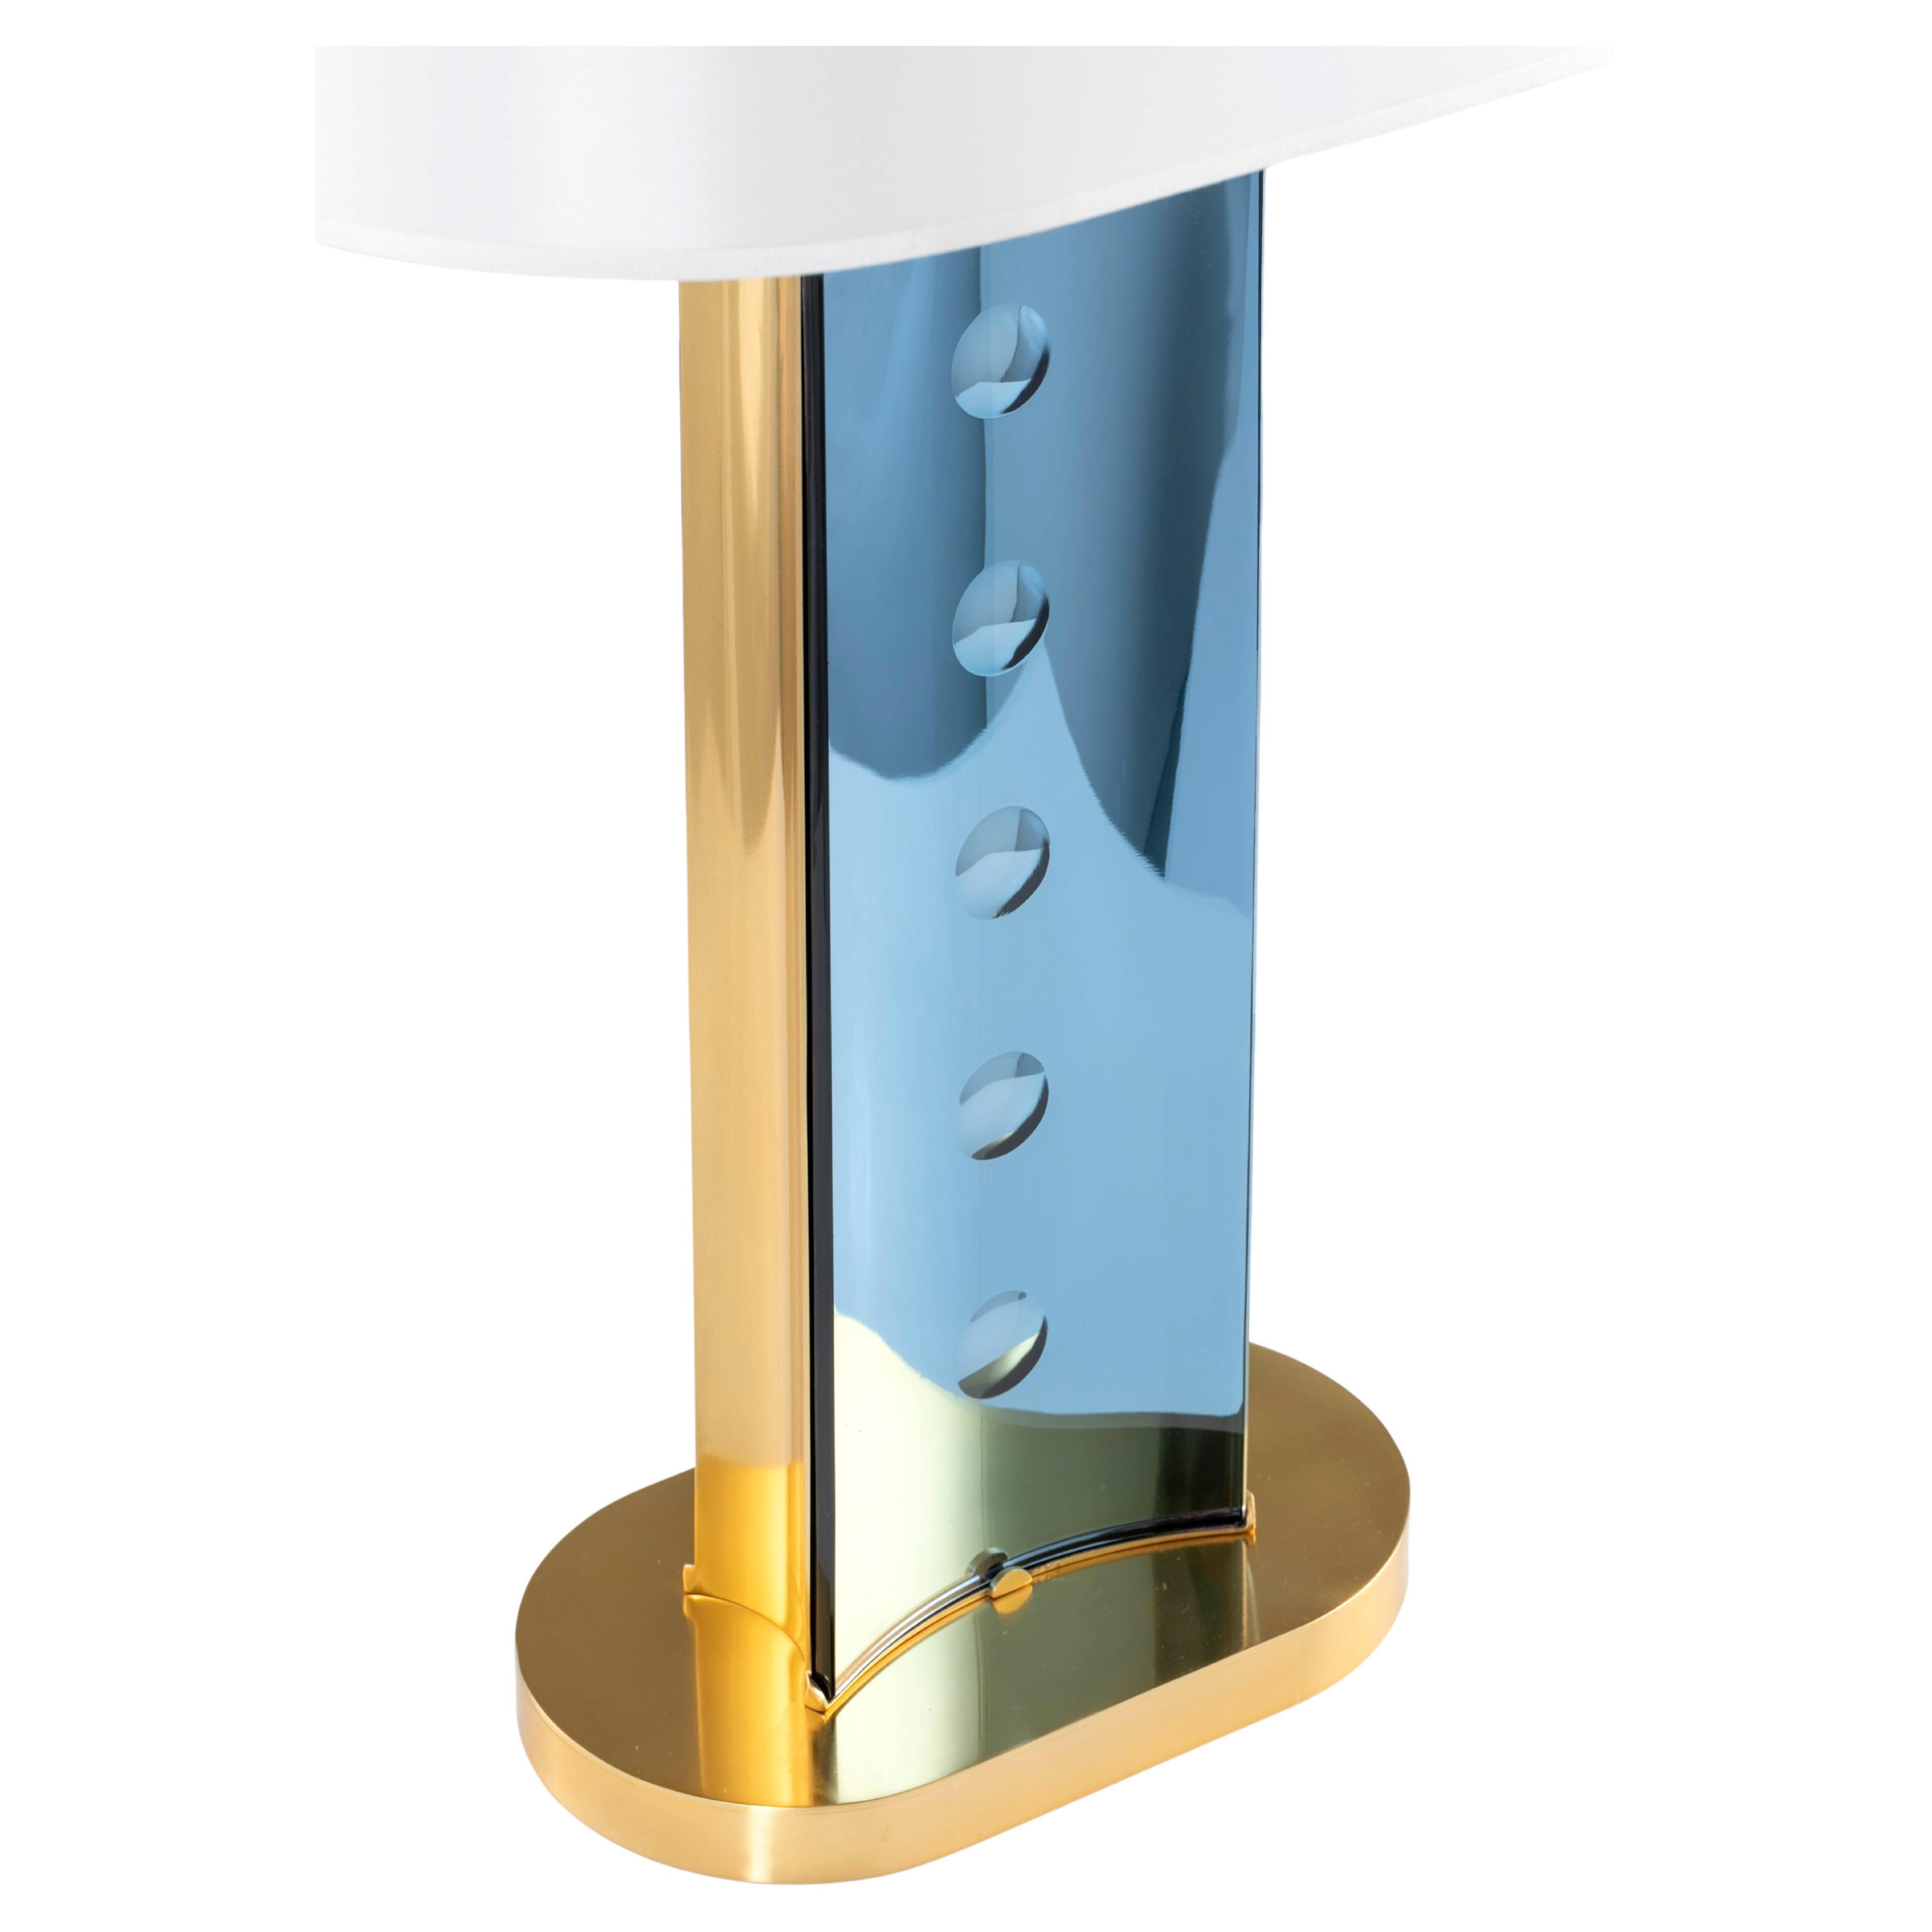 Paire de lampes 'TEGOLINE BLU' de Roberto Giulio Rida

Les lampes de table 'Tegoline blu' font partie d'une petite collection de lampes dans les couleurs suivantes : or, vert et bleu. Chaque paire est unique et ne peut être répétée.
Le corps des